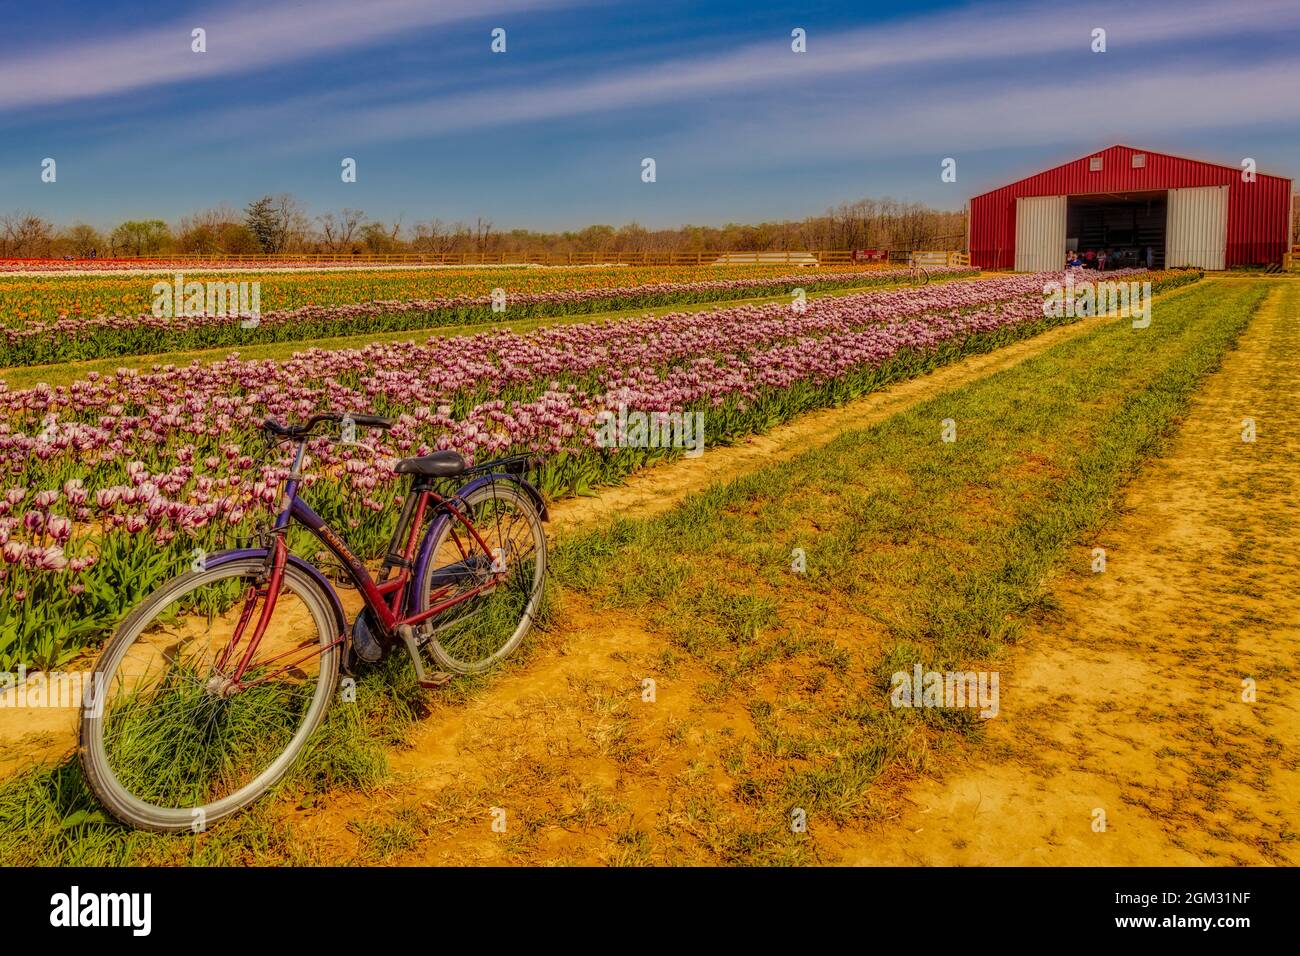 Los tulipanes, bicicleta y granero - viejo puntero bicicleta rodeado por miles de bonitos tulipanes y granero en la granja.Disponible en color así como en un bla Foto de stock